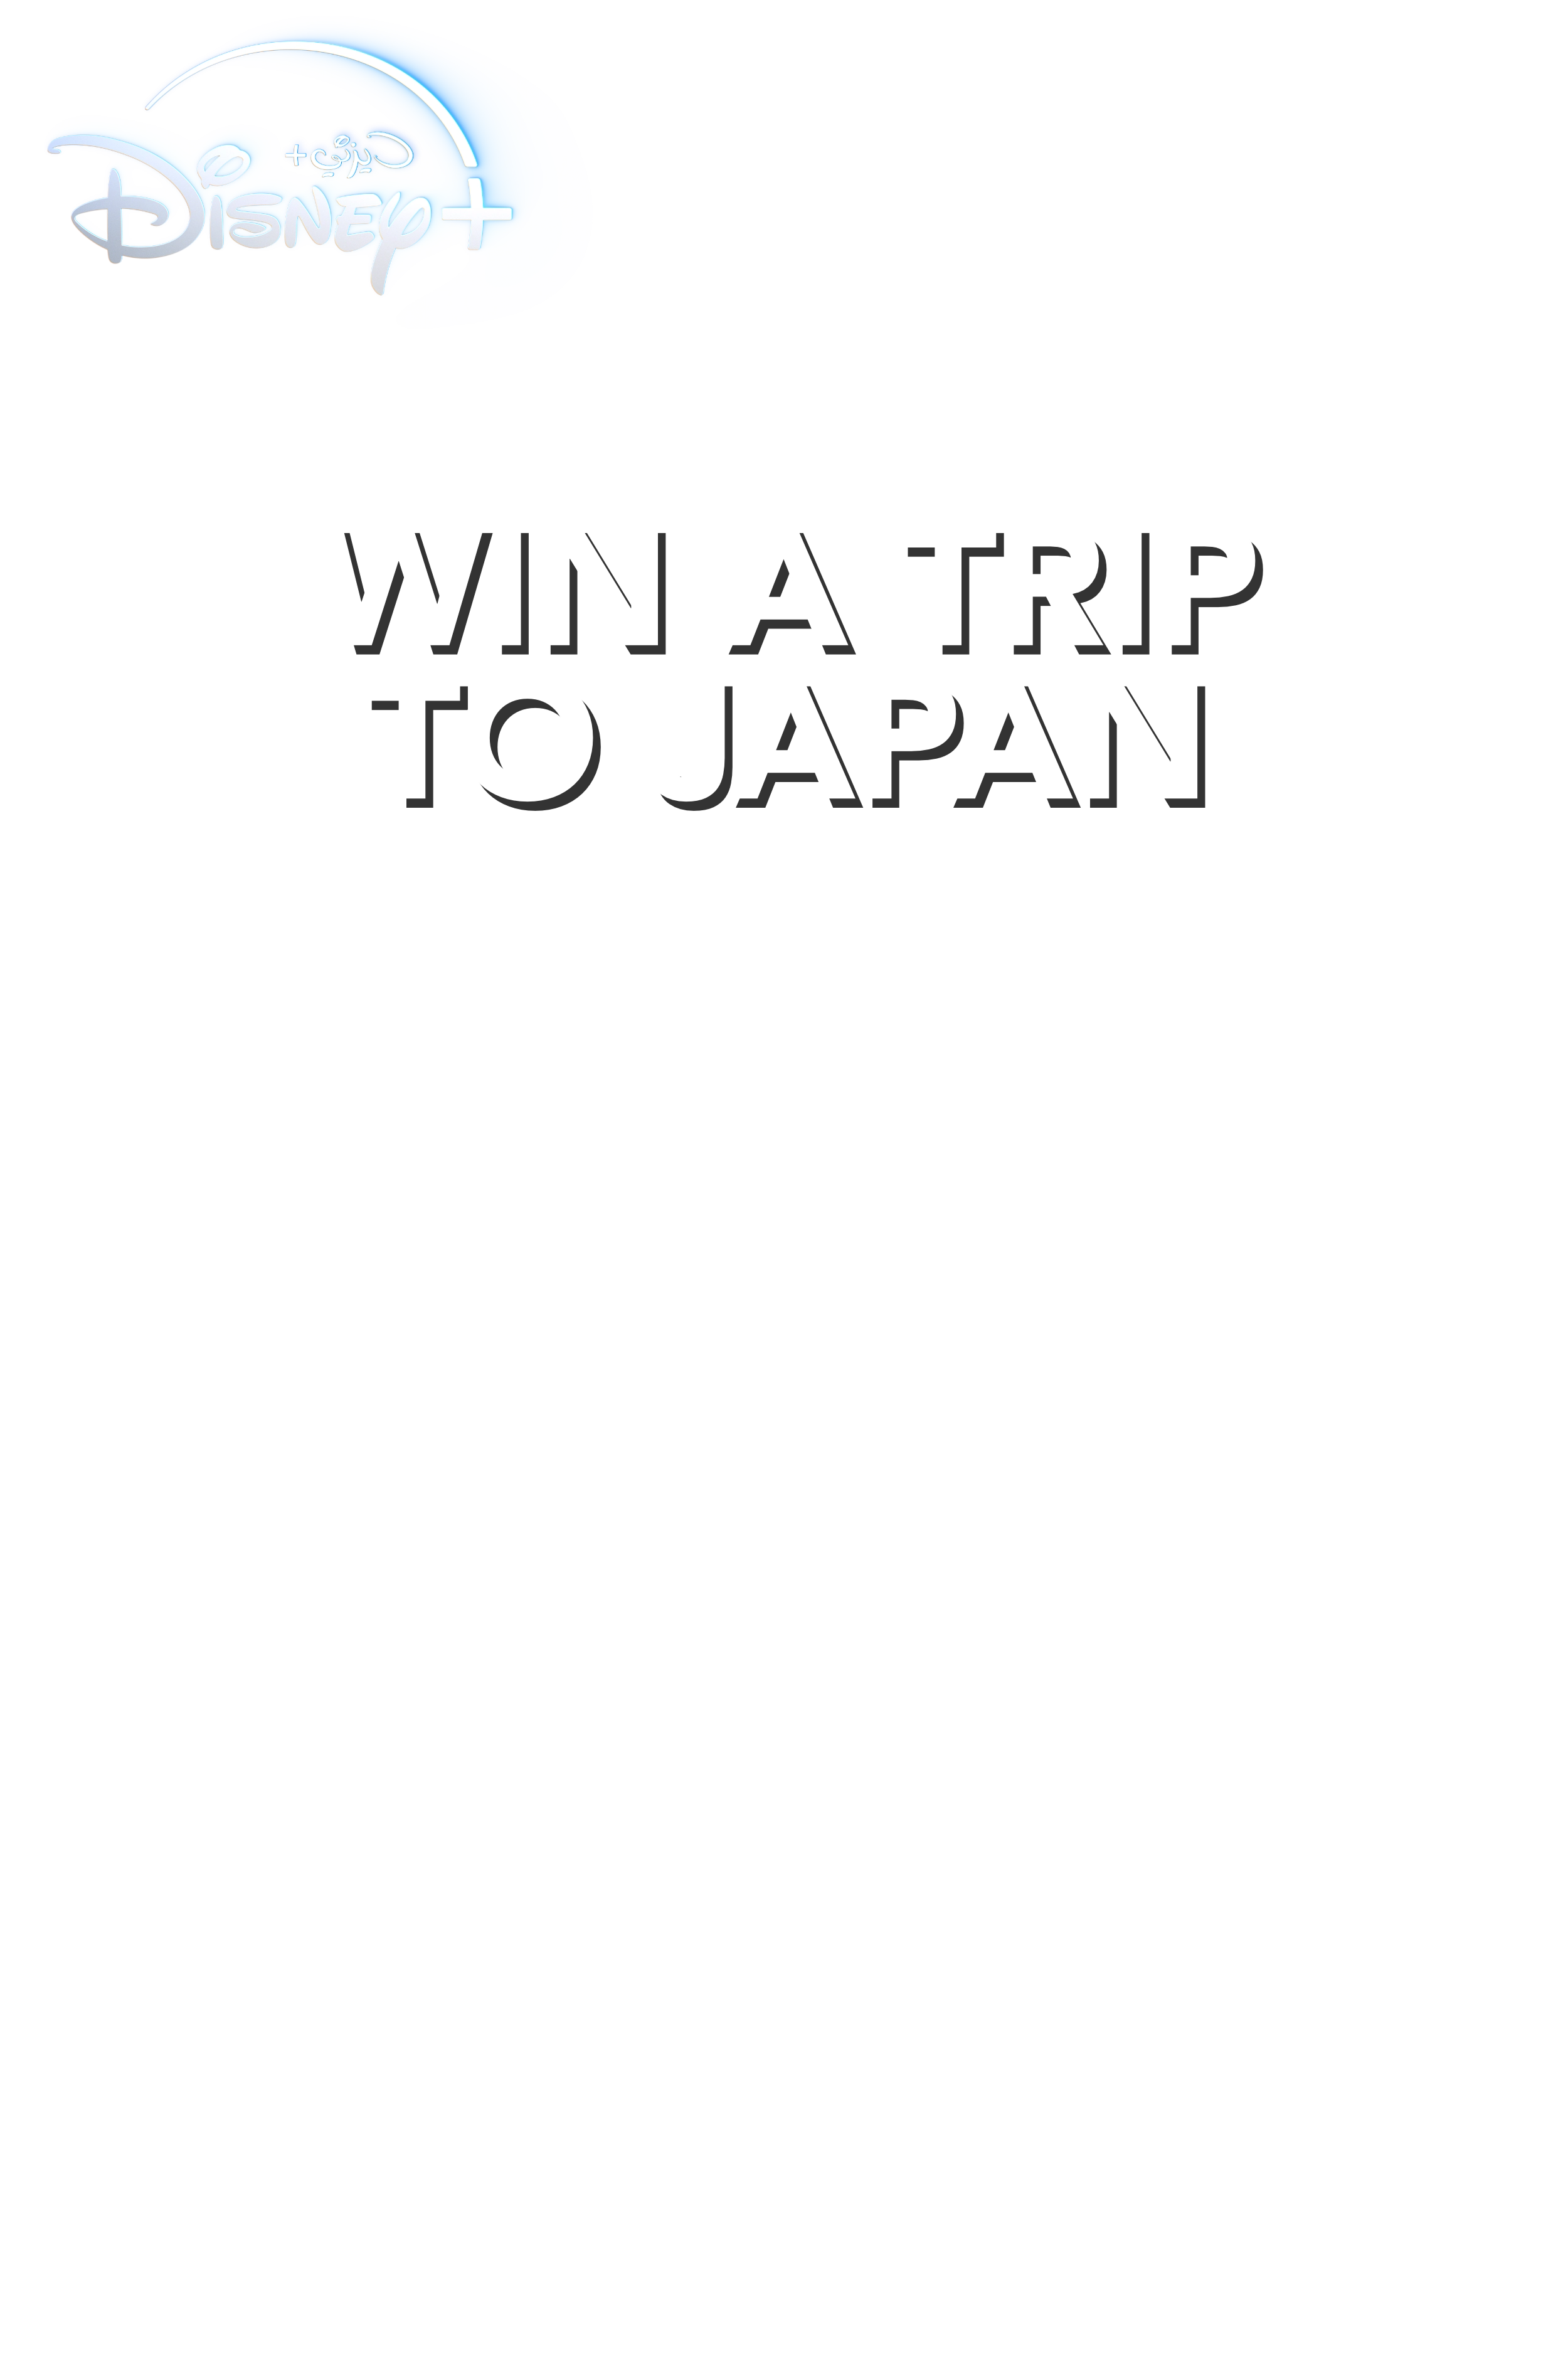 اربح رحلة ملهمة إلى اليابان